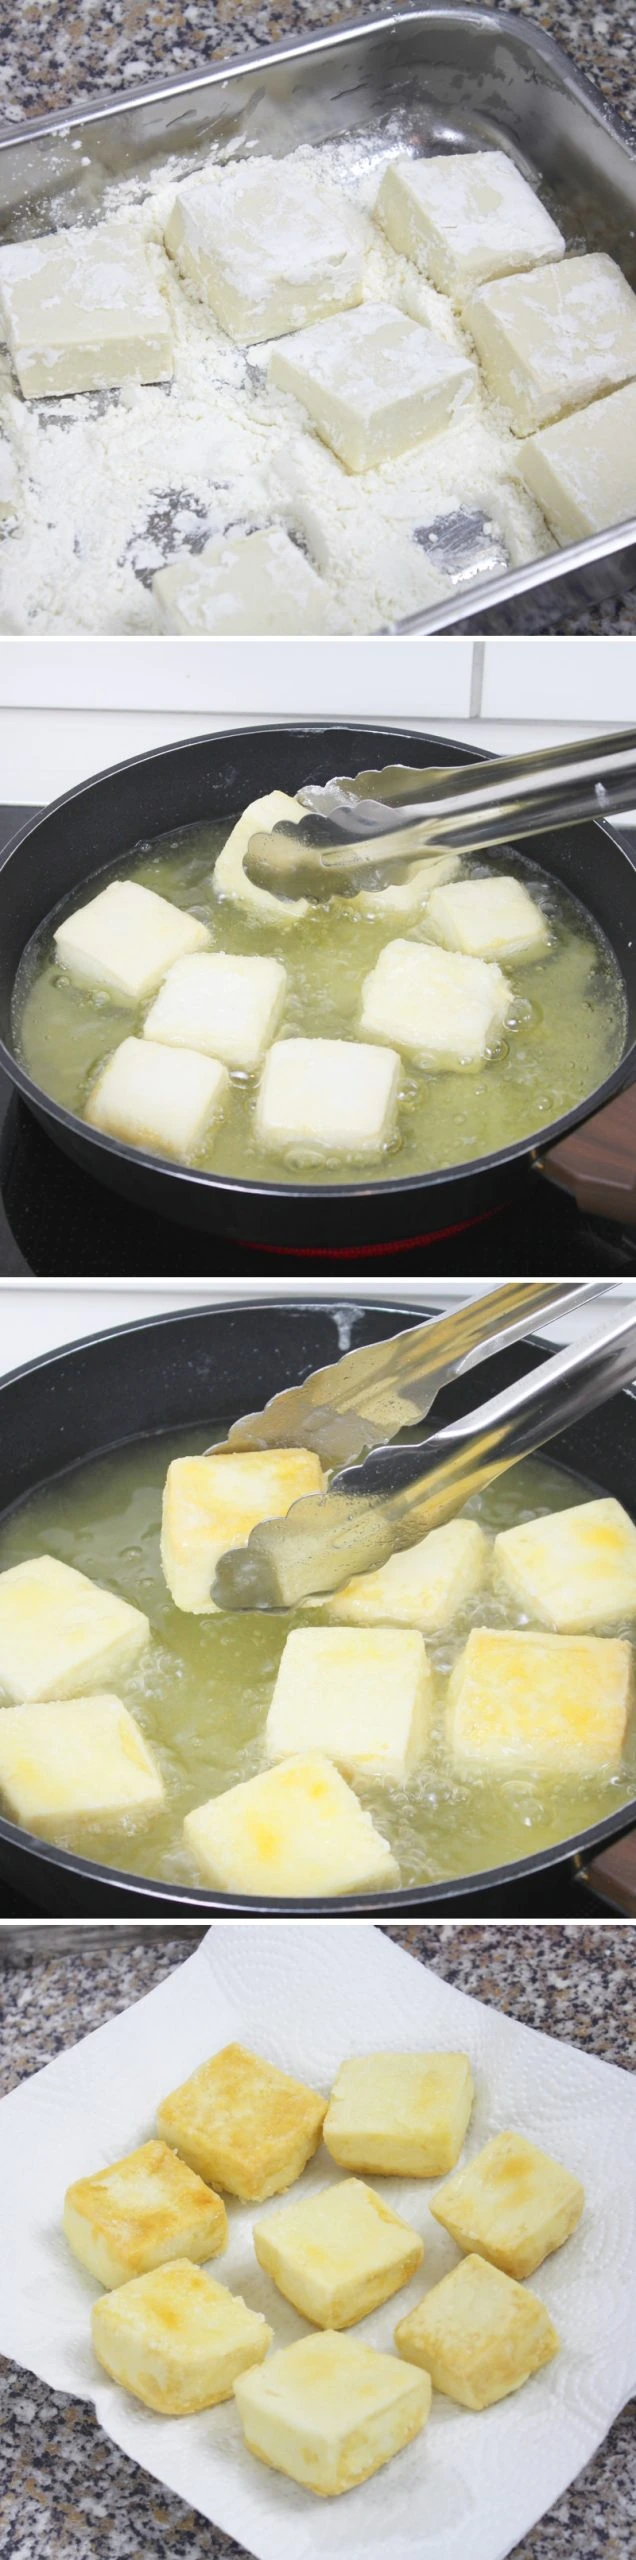 Agedashi Tofu Schritt 7 Tofu frittieren